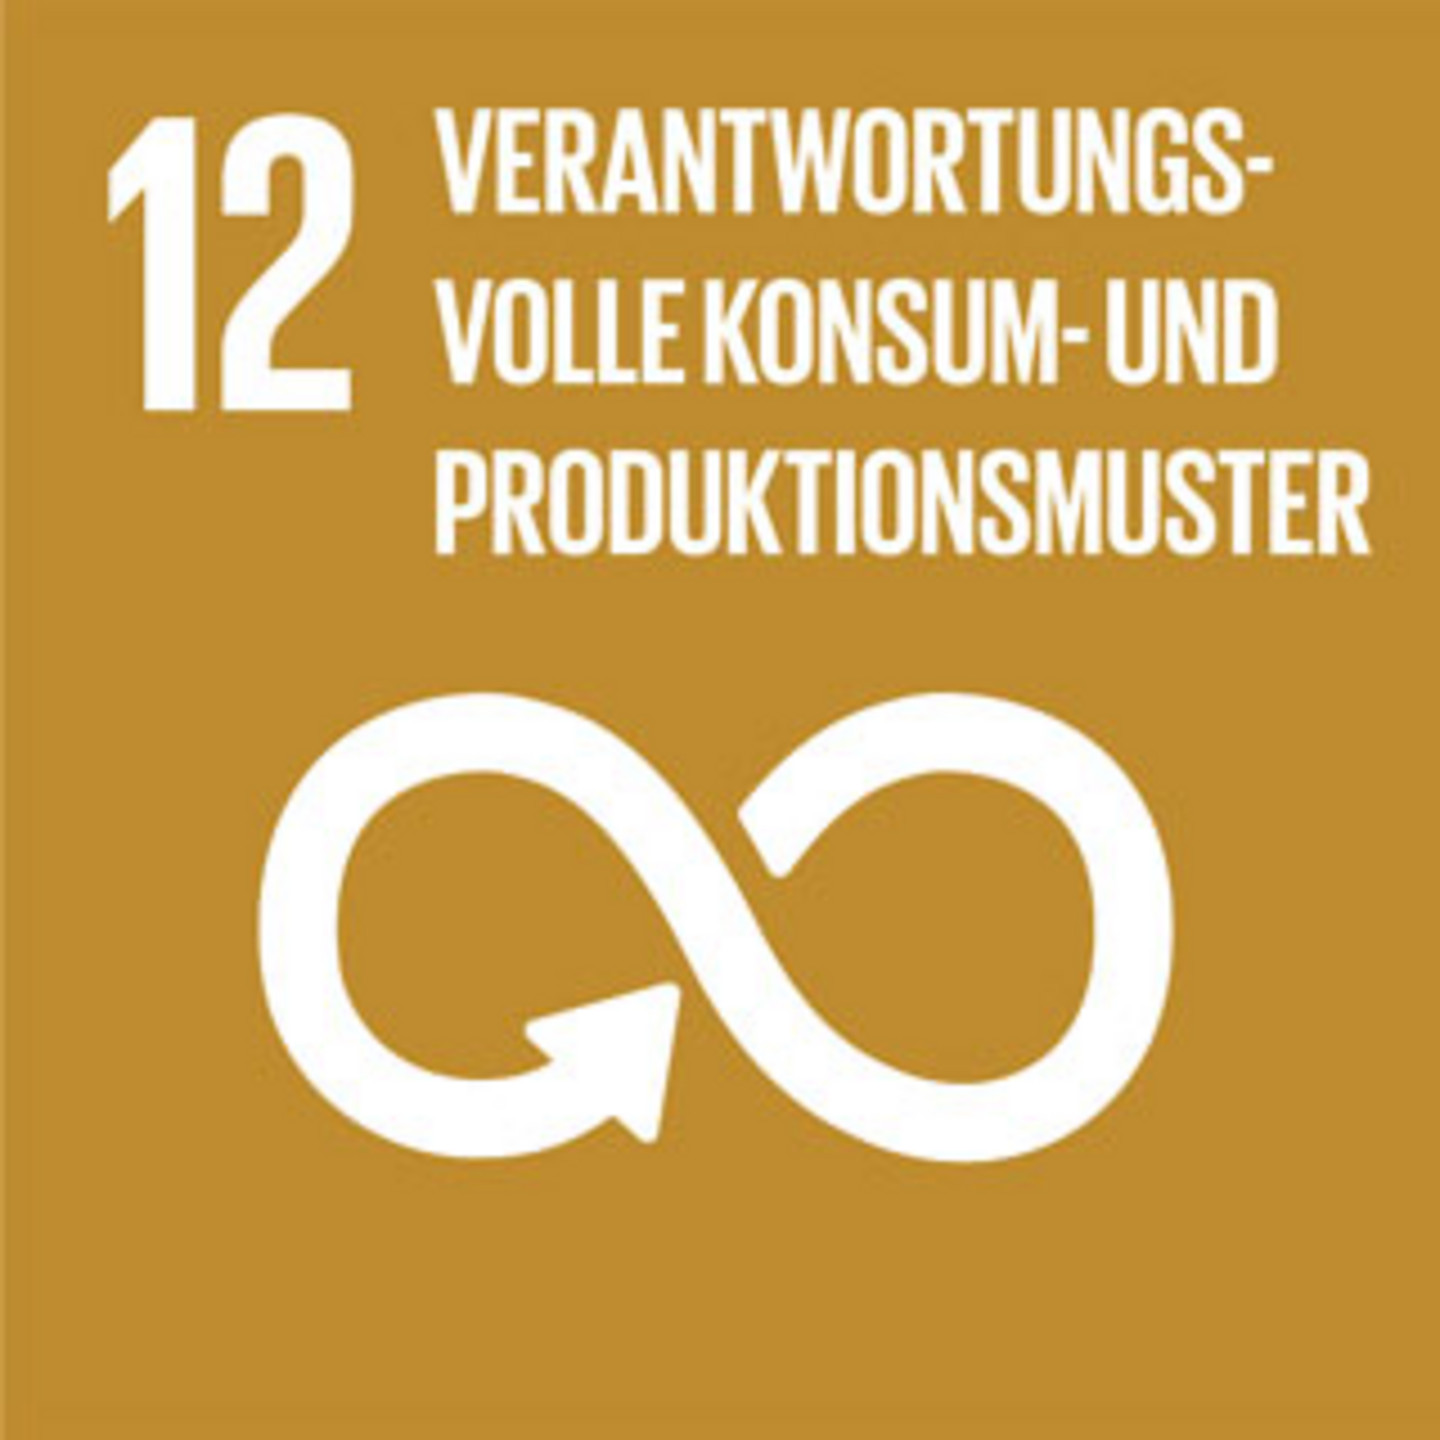 Ein brauner Hintergrund mit der Schrift "Verantwortungsvolle Konsum- und Produktionsmuster".